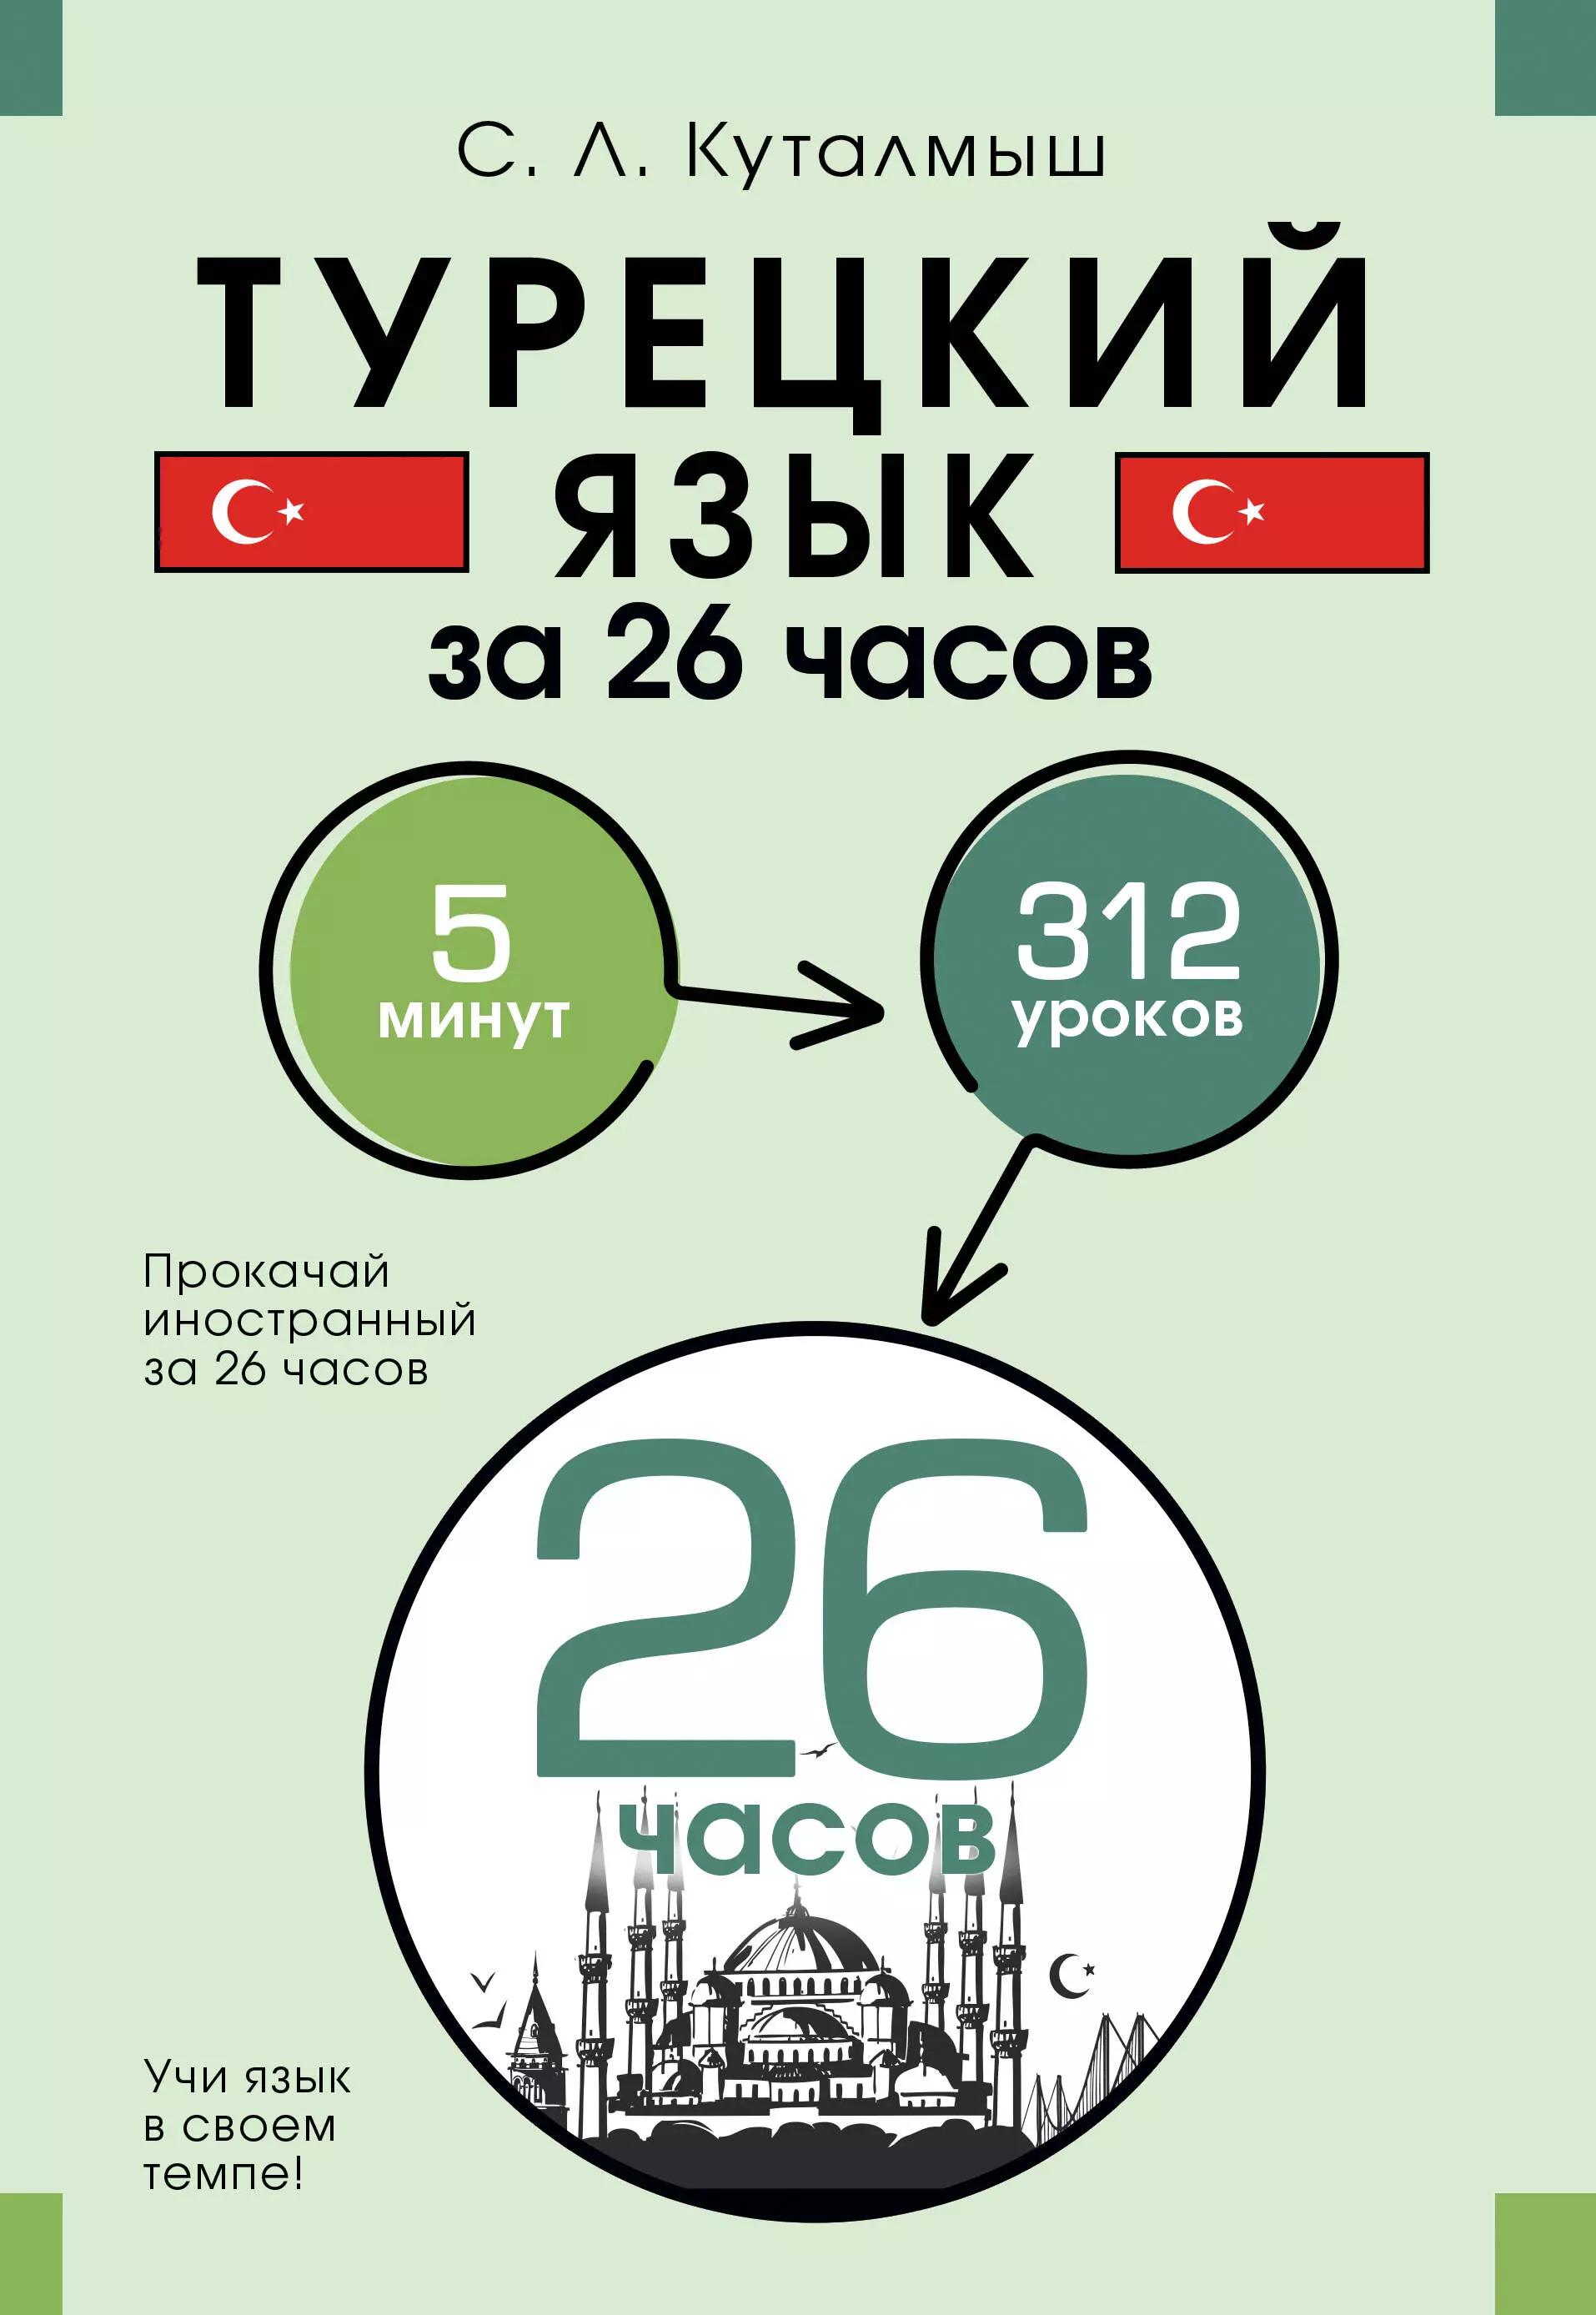 Турецкий язык за 26 часов знак за безаварийный налёт часов пилот 13000 часов ссср